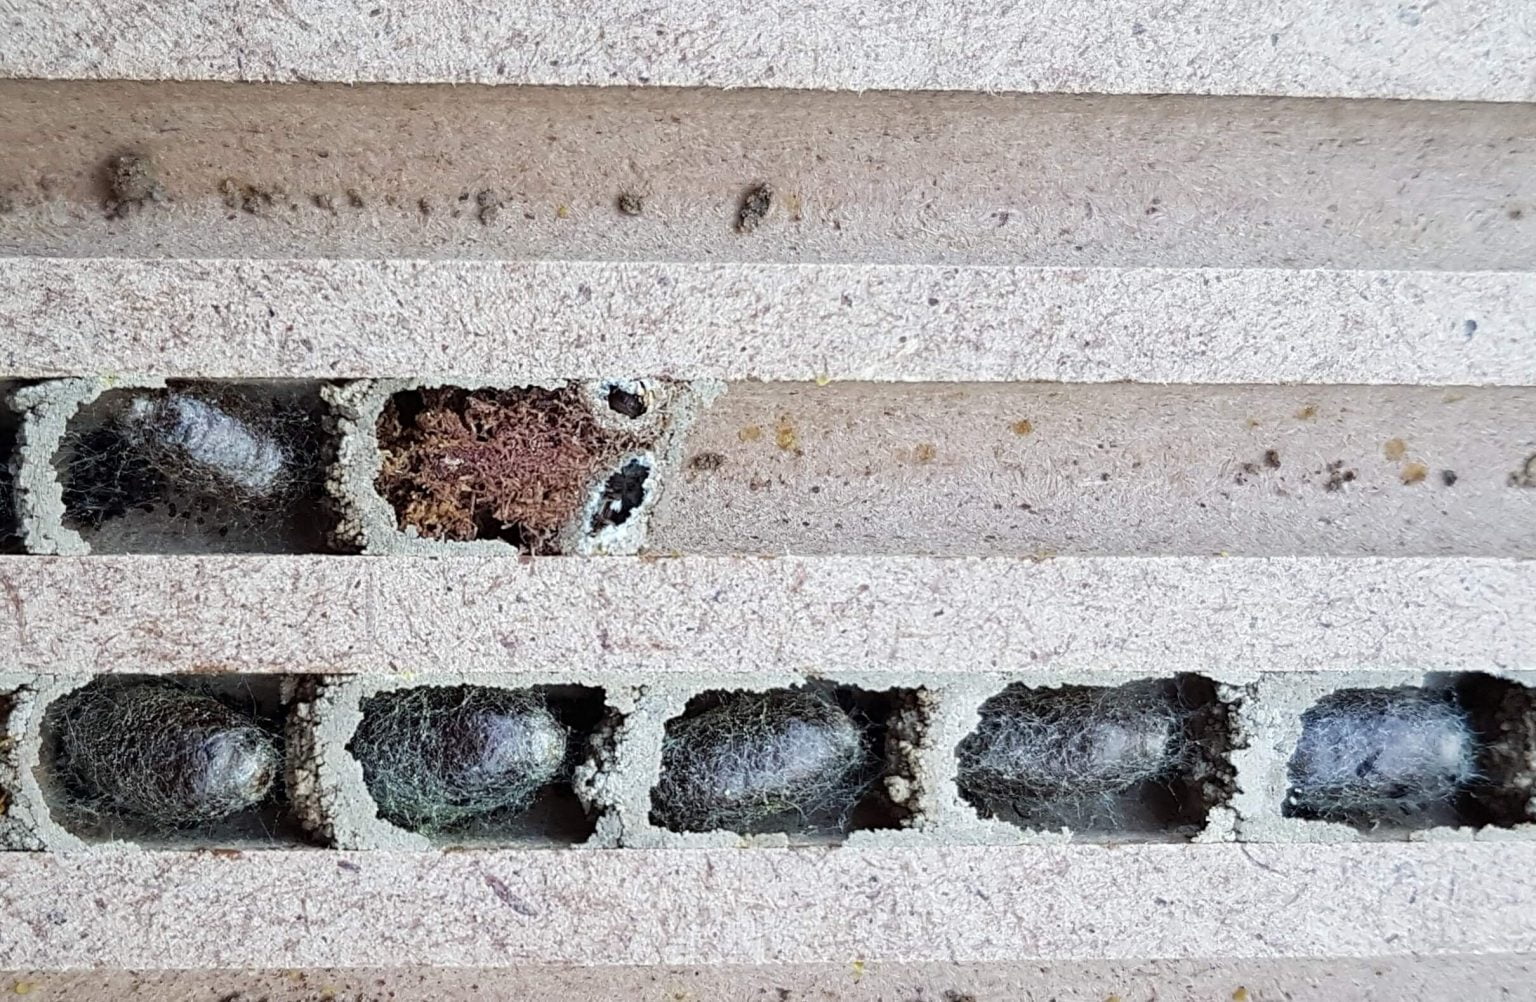 Nistbrett mit Kokons der Rostroten Mauerbiene (Osmia bicornis) und Kugelkäfer ungestört